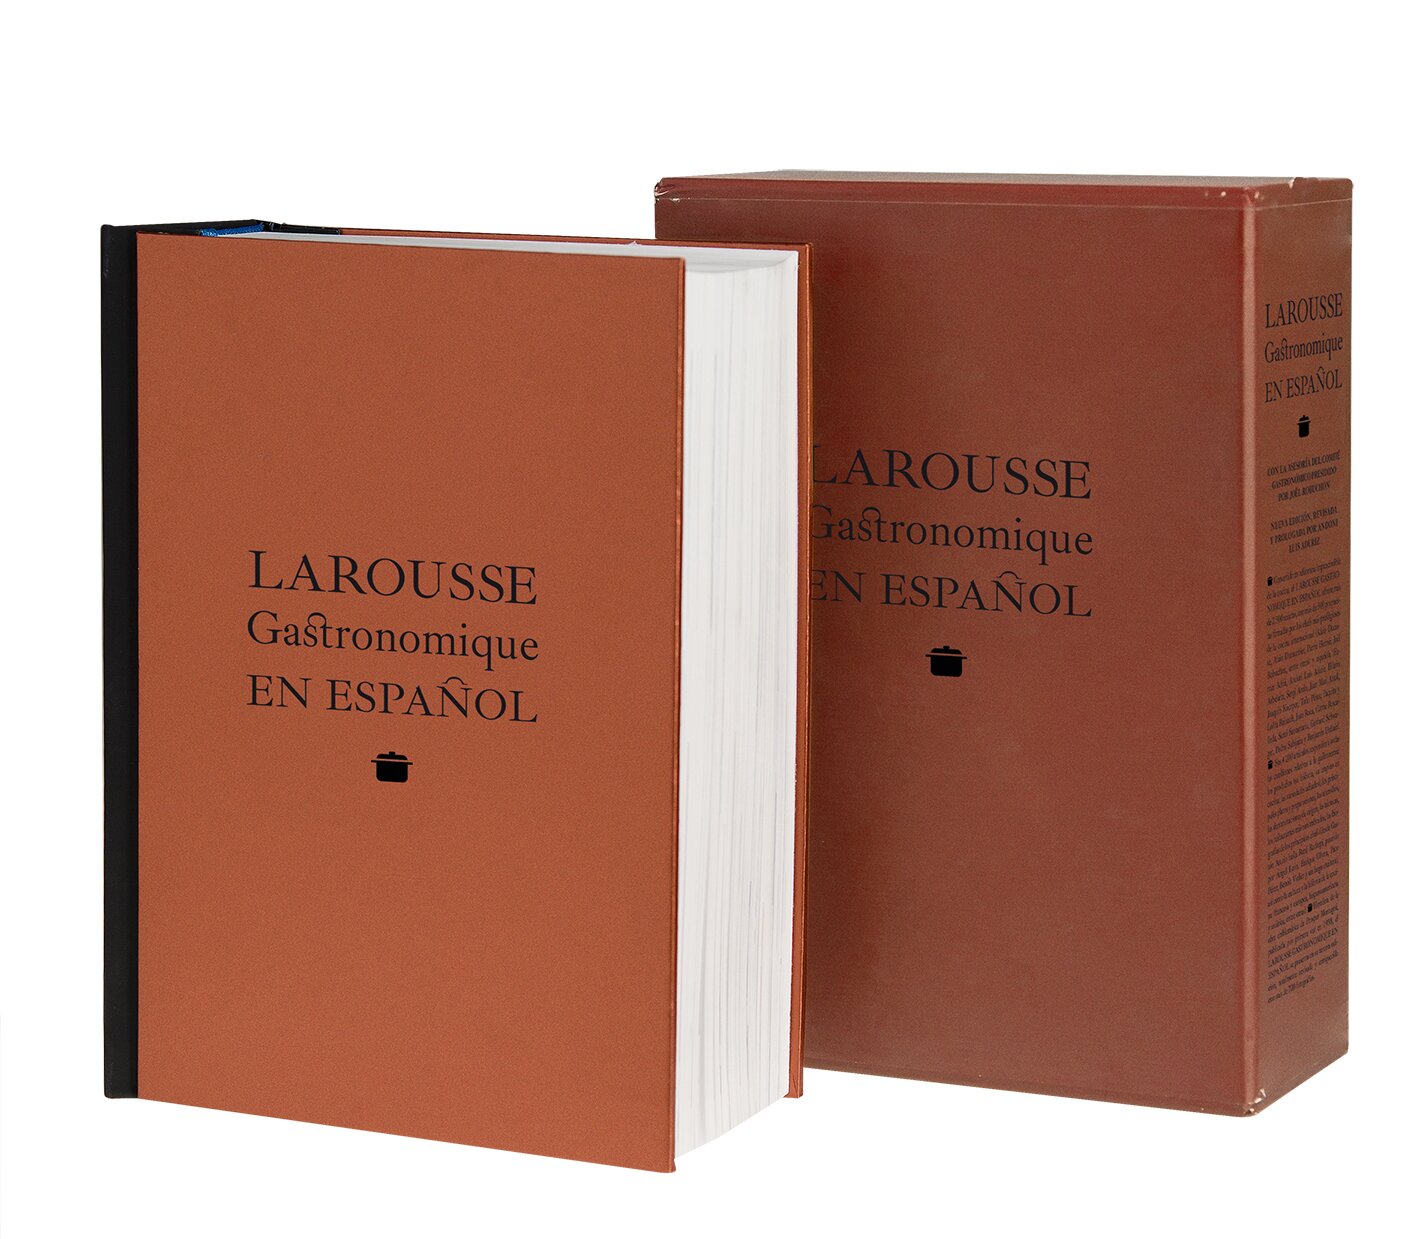 LAROUSSE GASTRONOMIQUE EN ESPAÑOL. Nueva edición, revisada y prologada por Andoni Luis Aduriz